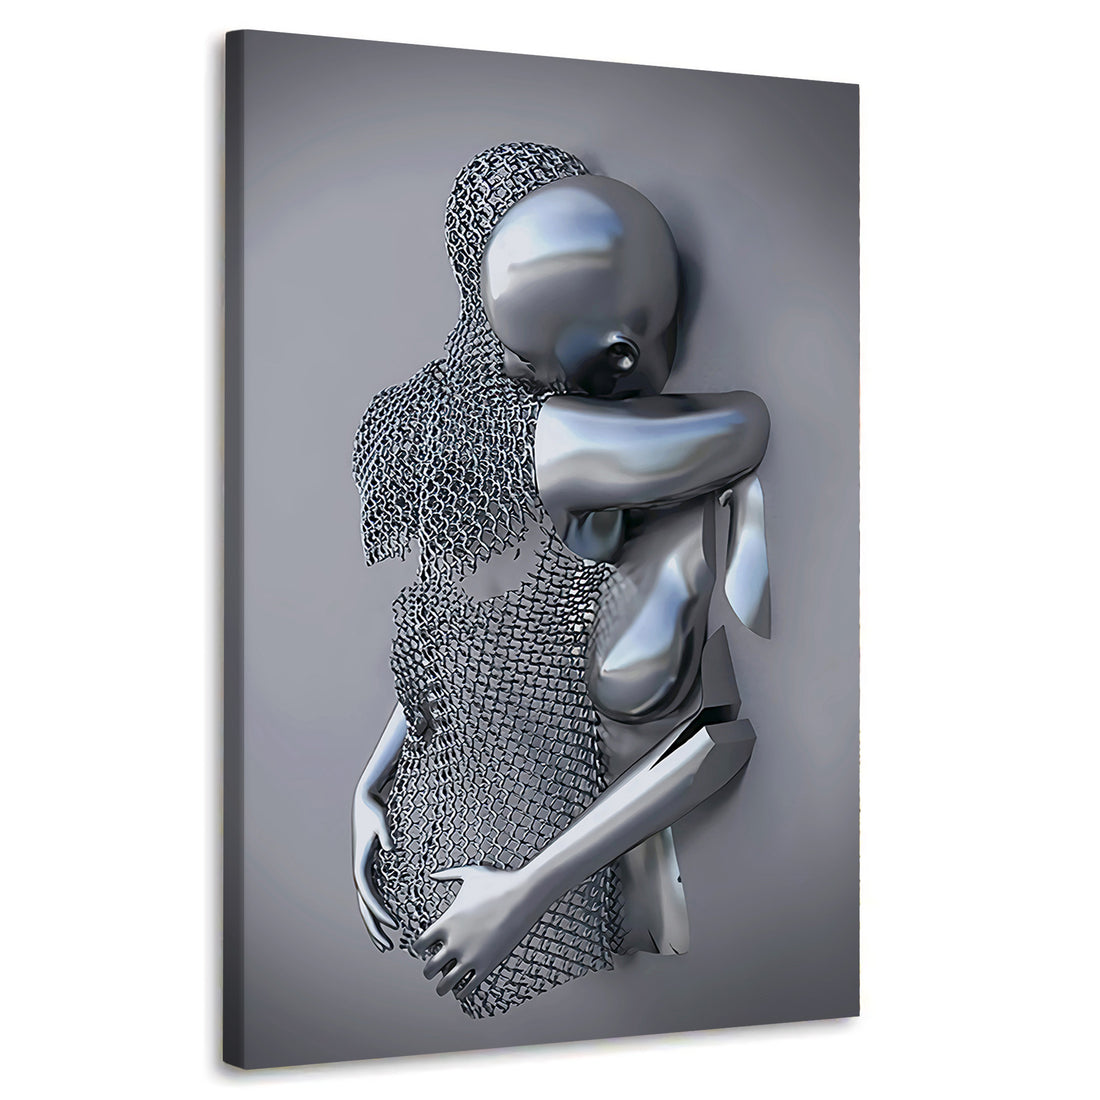 Wandbild Abstract 3D Metallfiguren Surrealismus zwei Körper